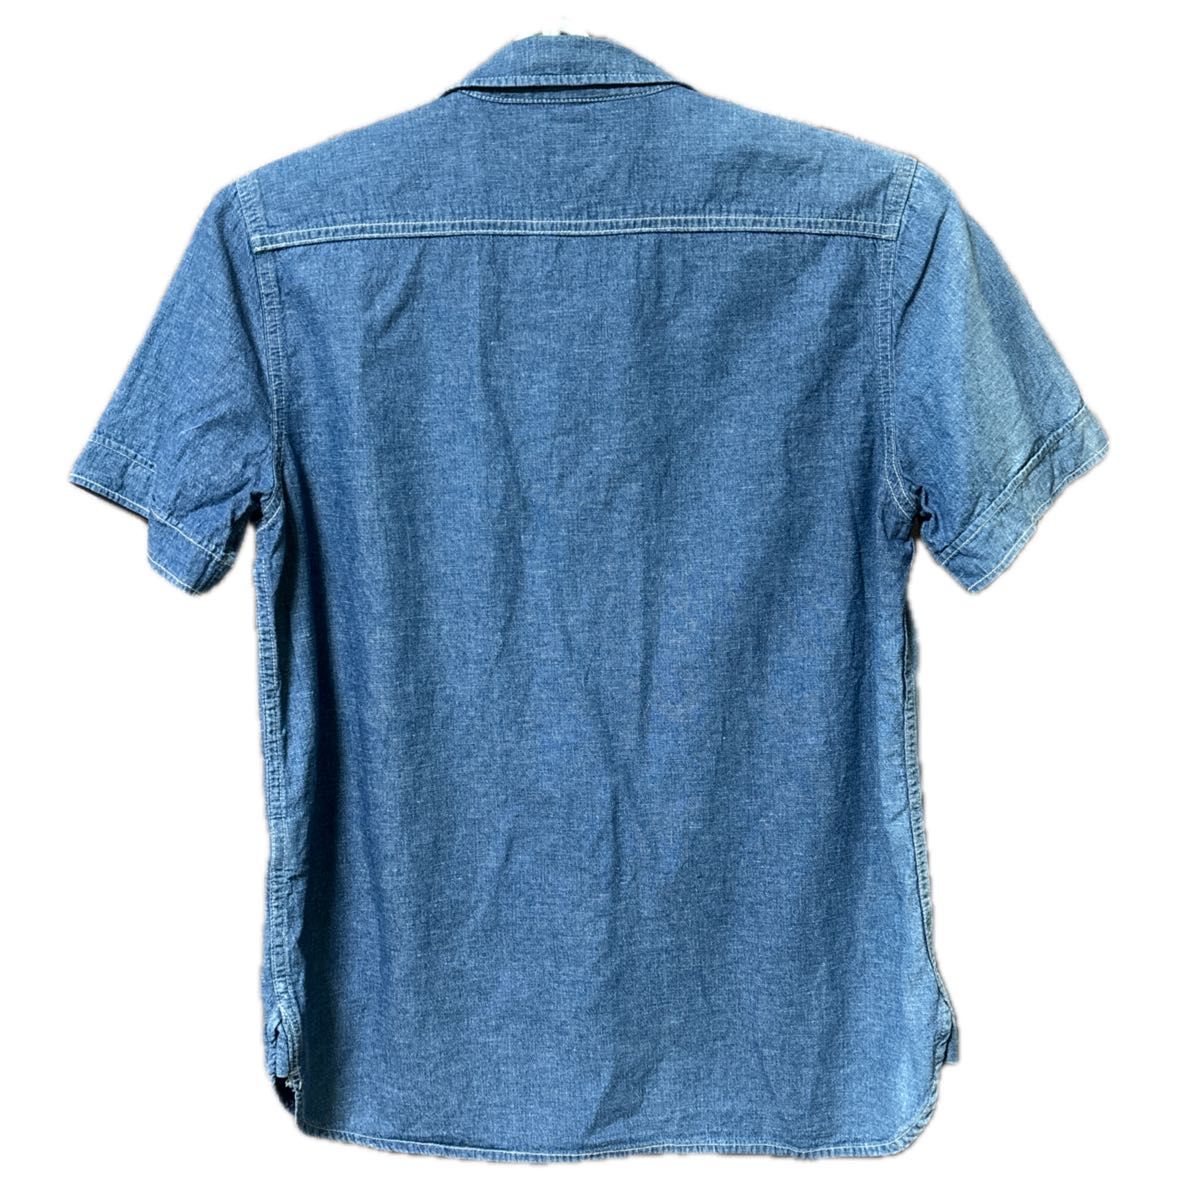 EDWIN デニムワークシャツ 半袖 コットン リネン メンズ Mサイズ G00185